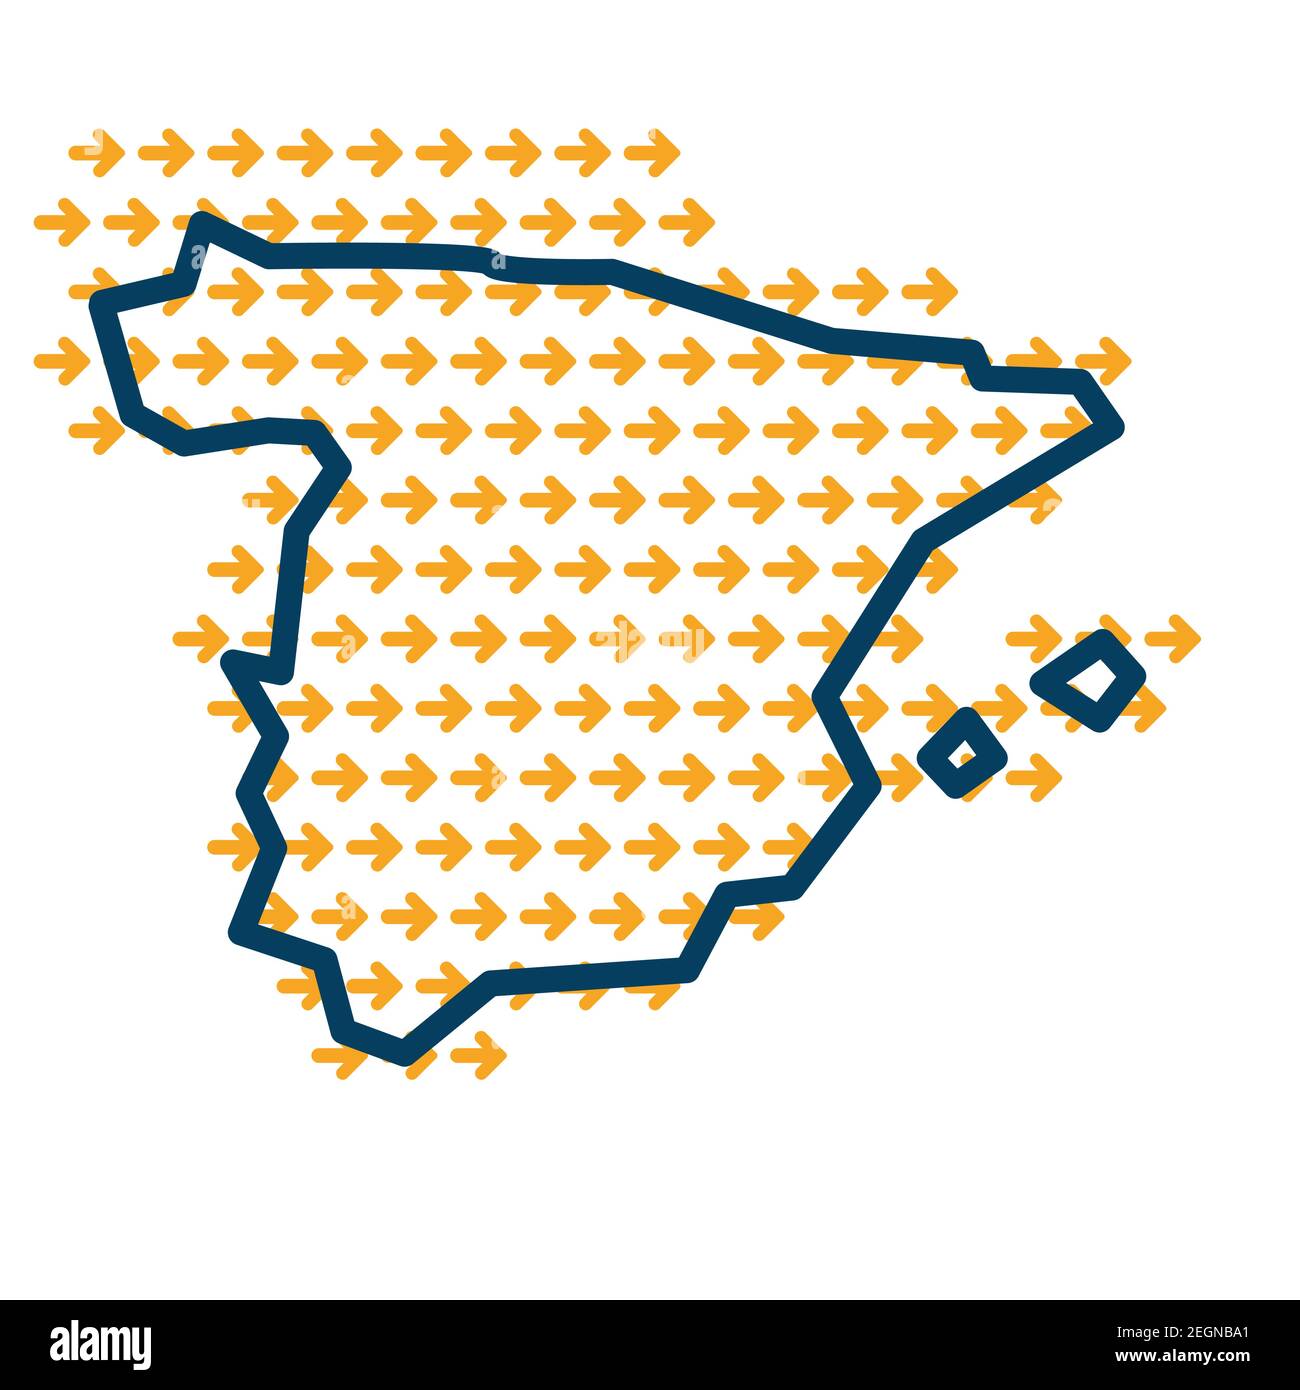 Espagne carte simple avec flèches de guidage jaunes. Illustration de Vecteur